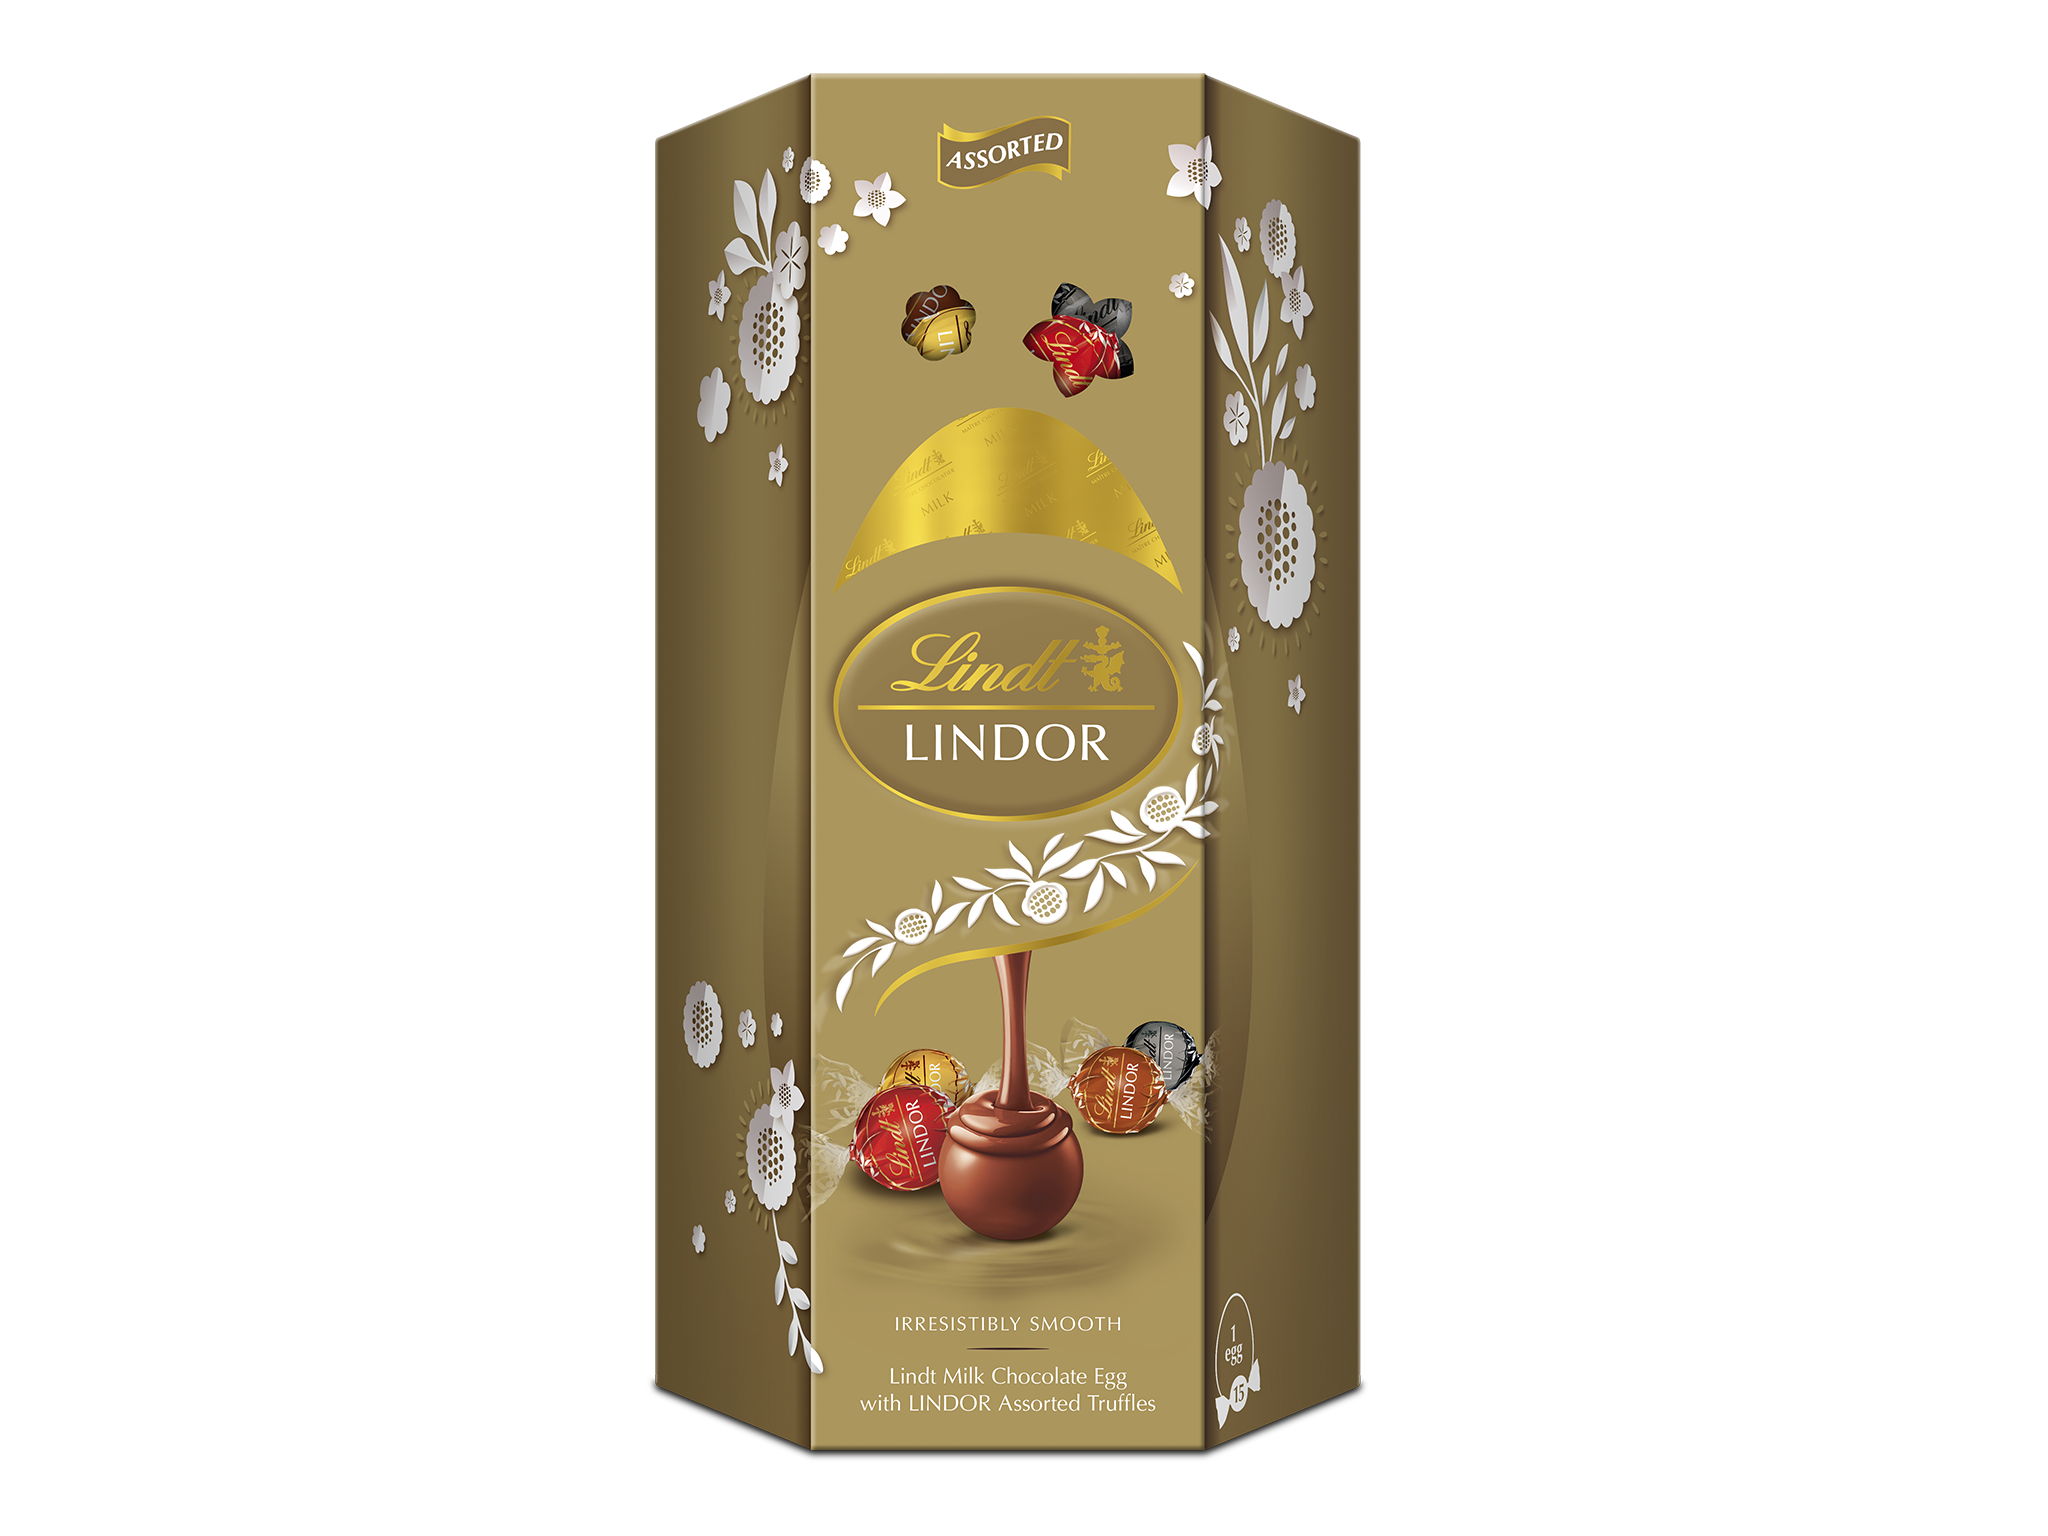 Lindt Lindor gold assorted Easter egg